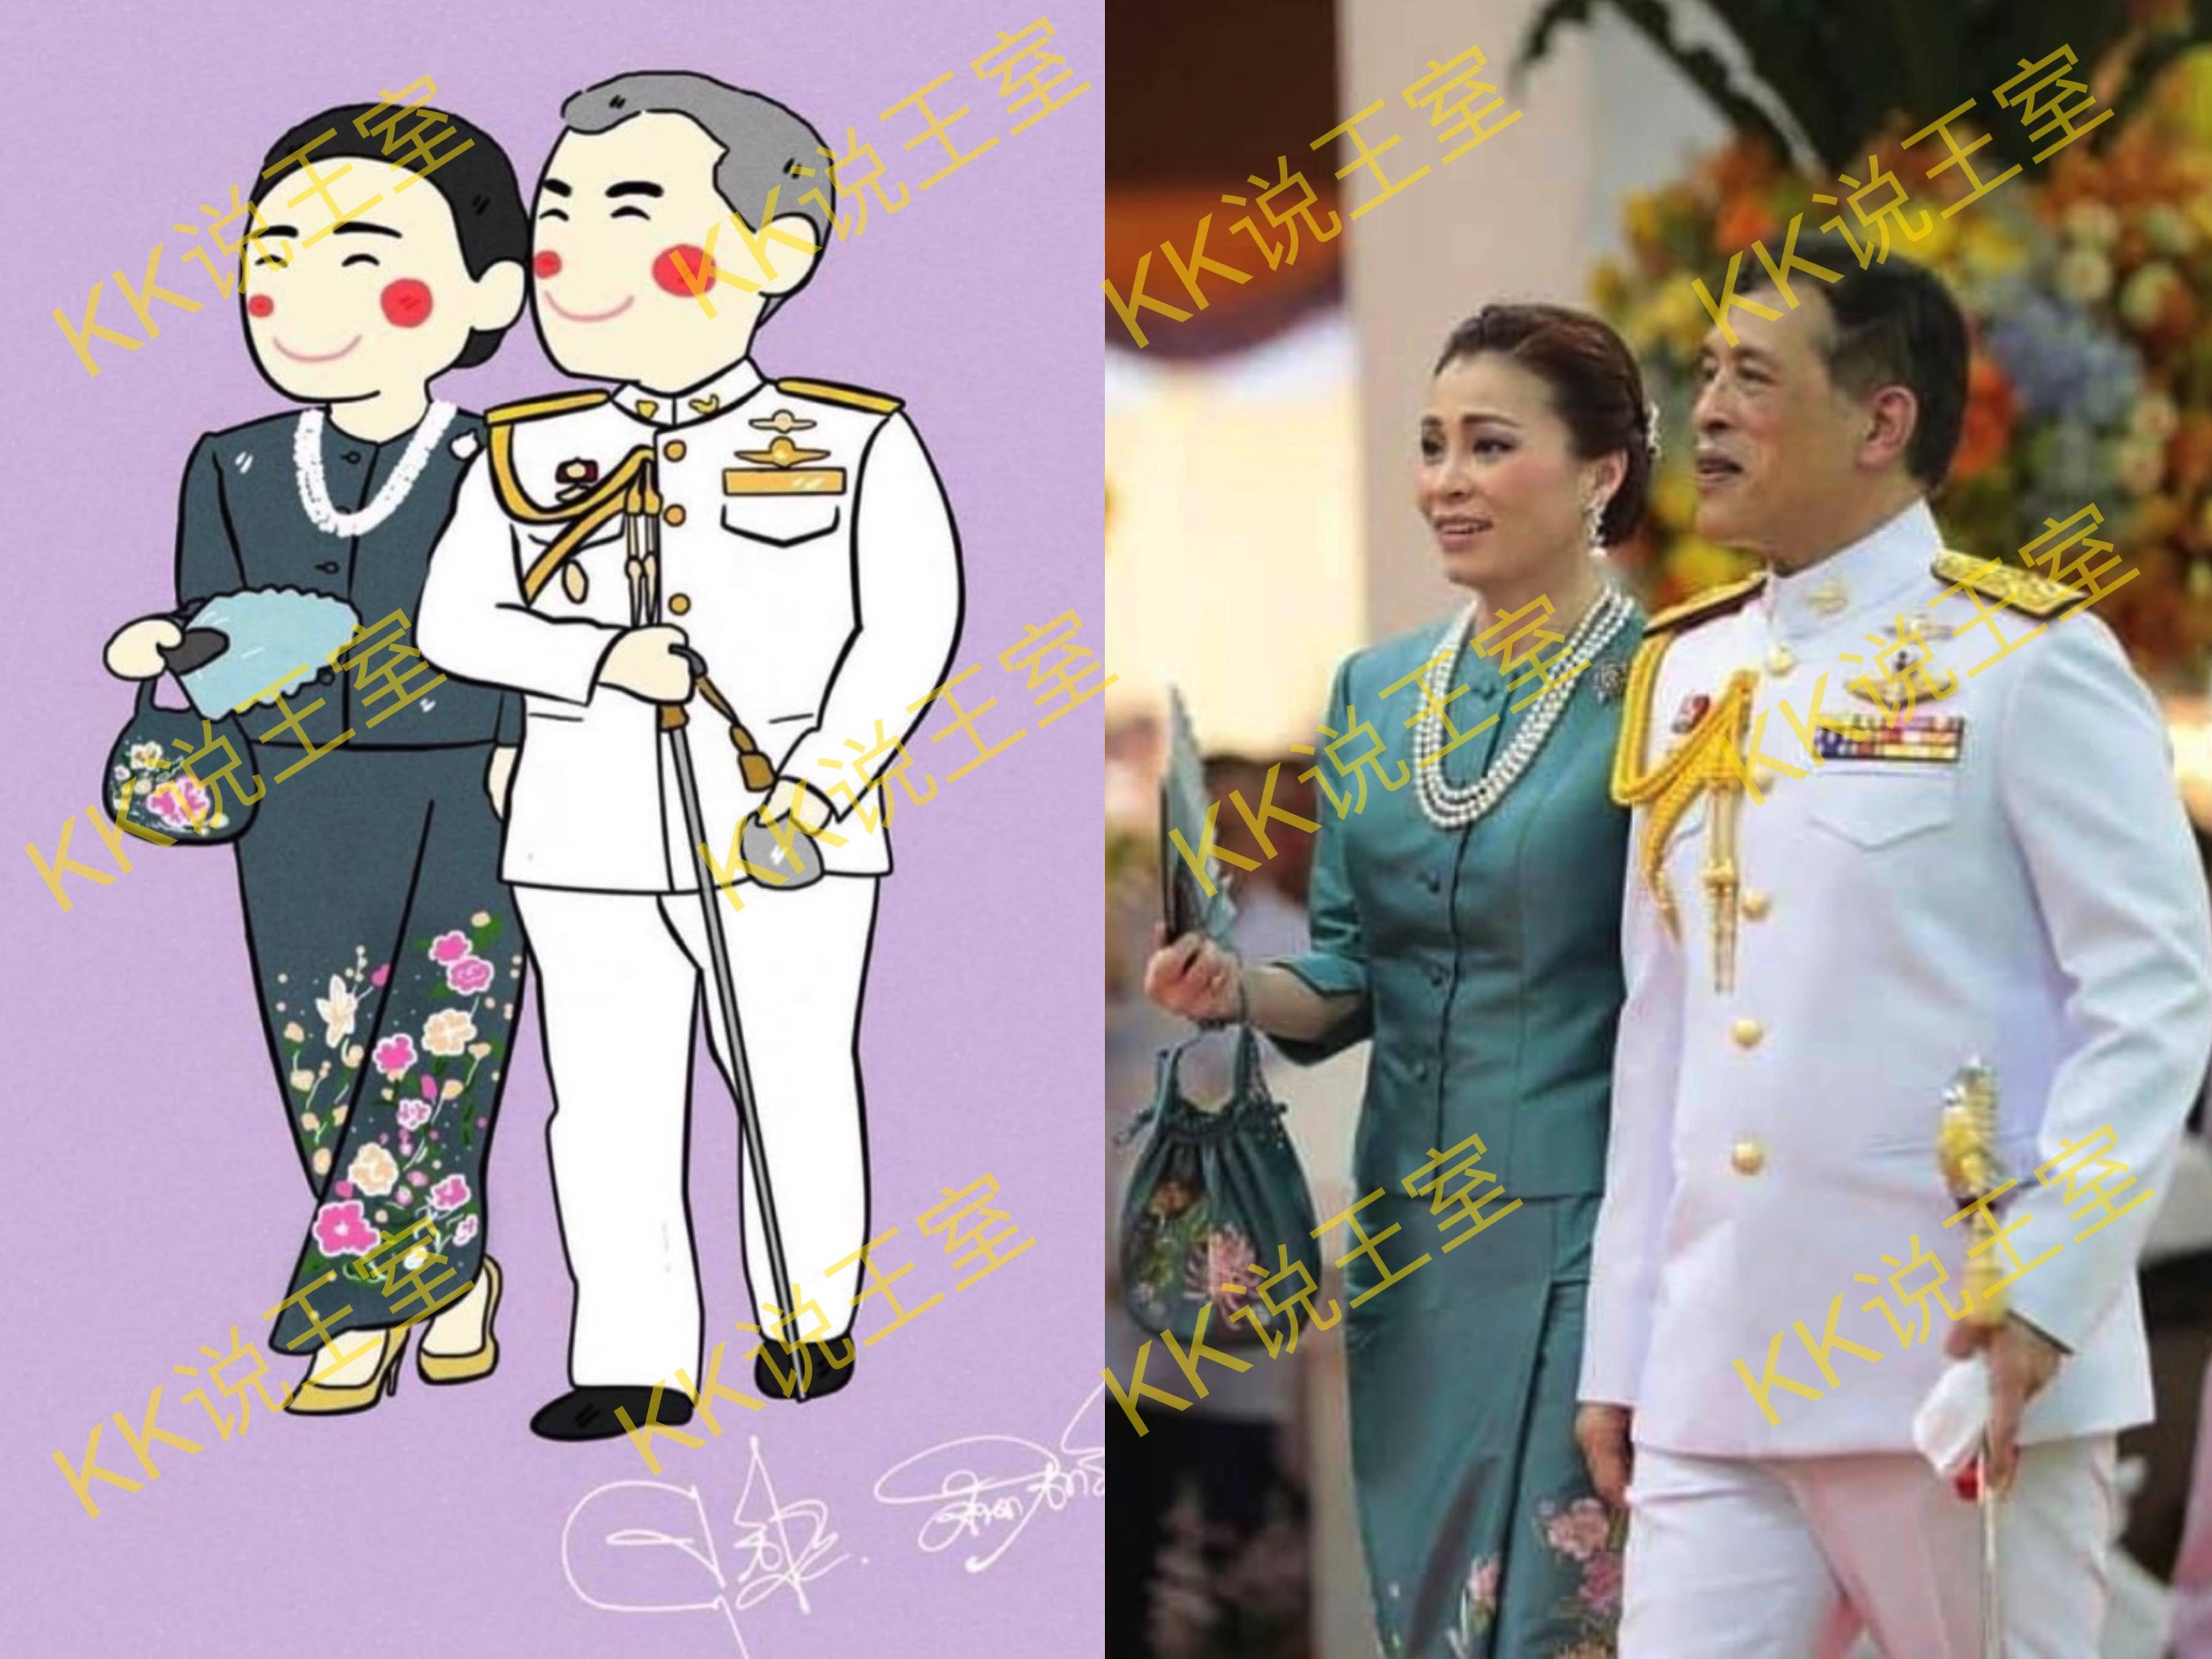 泰国王室中,不论是国王,还是王室成员的粉丝,都很喜欢用漫画来表达